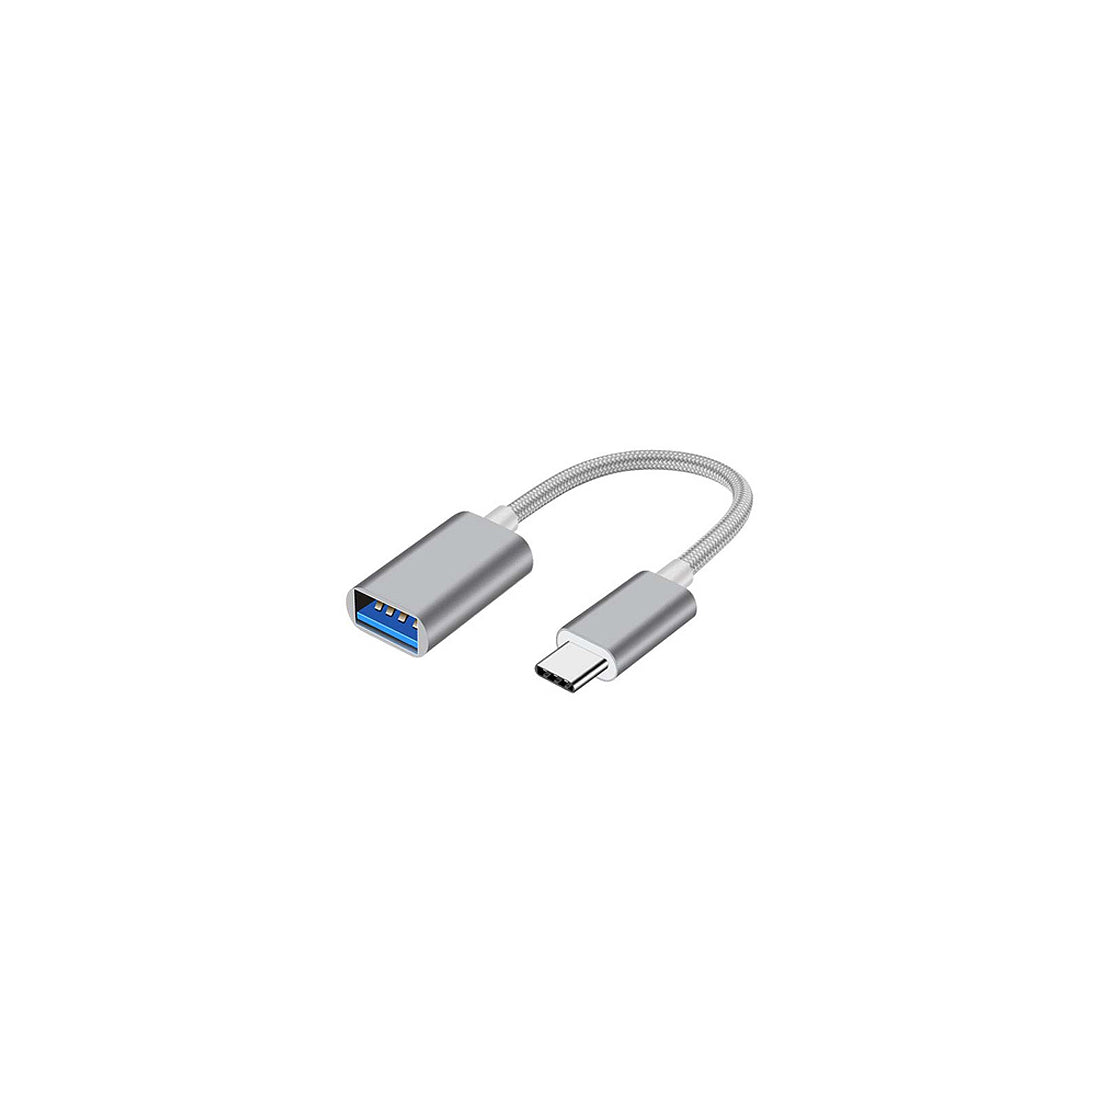 Générique - Câble USB Type-C vers USB-A OTG pour smartphone